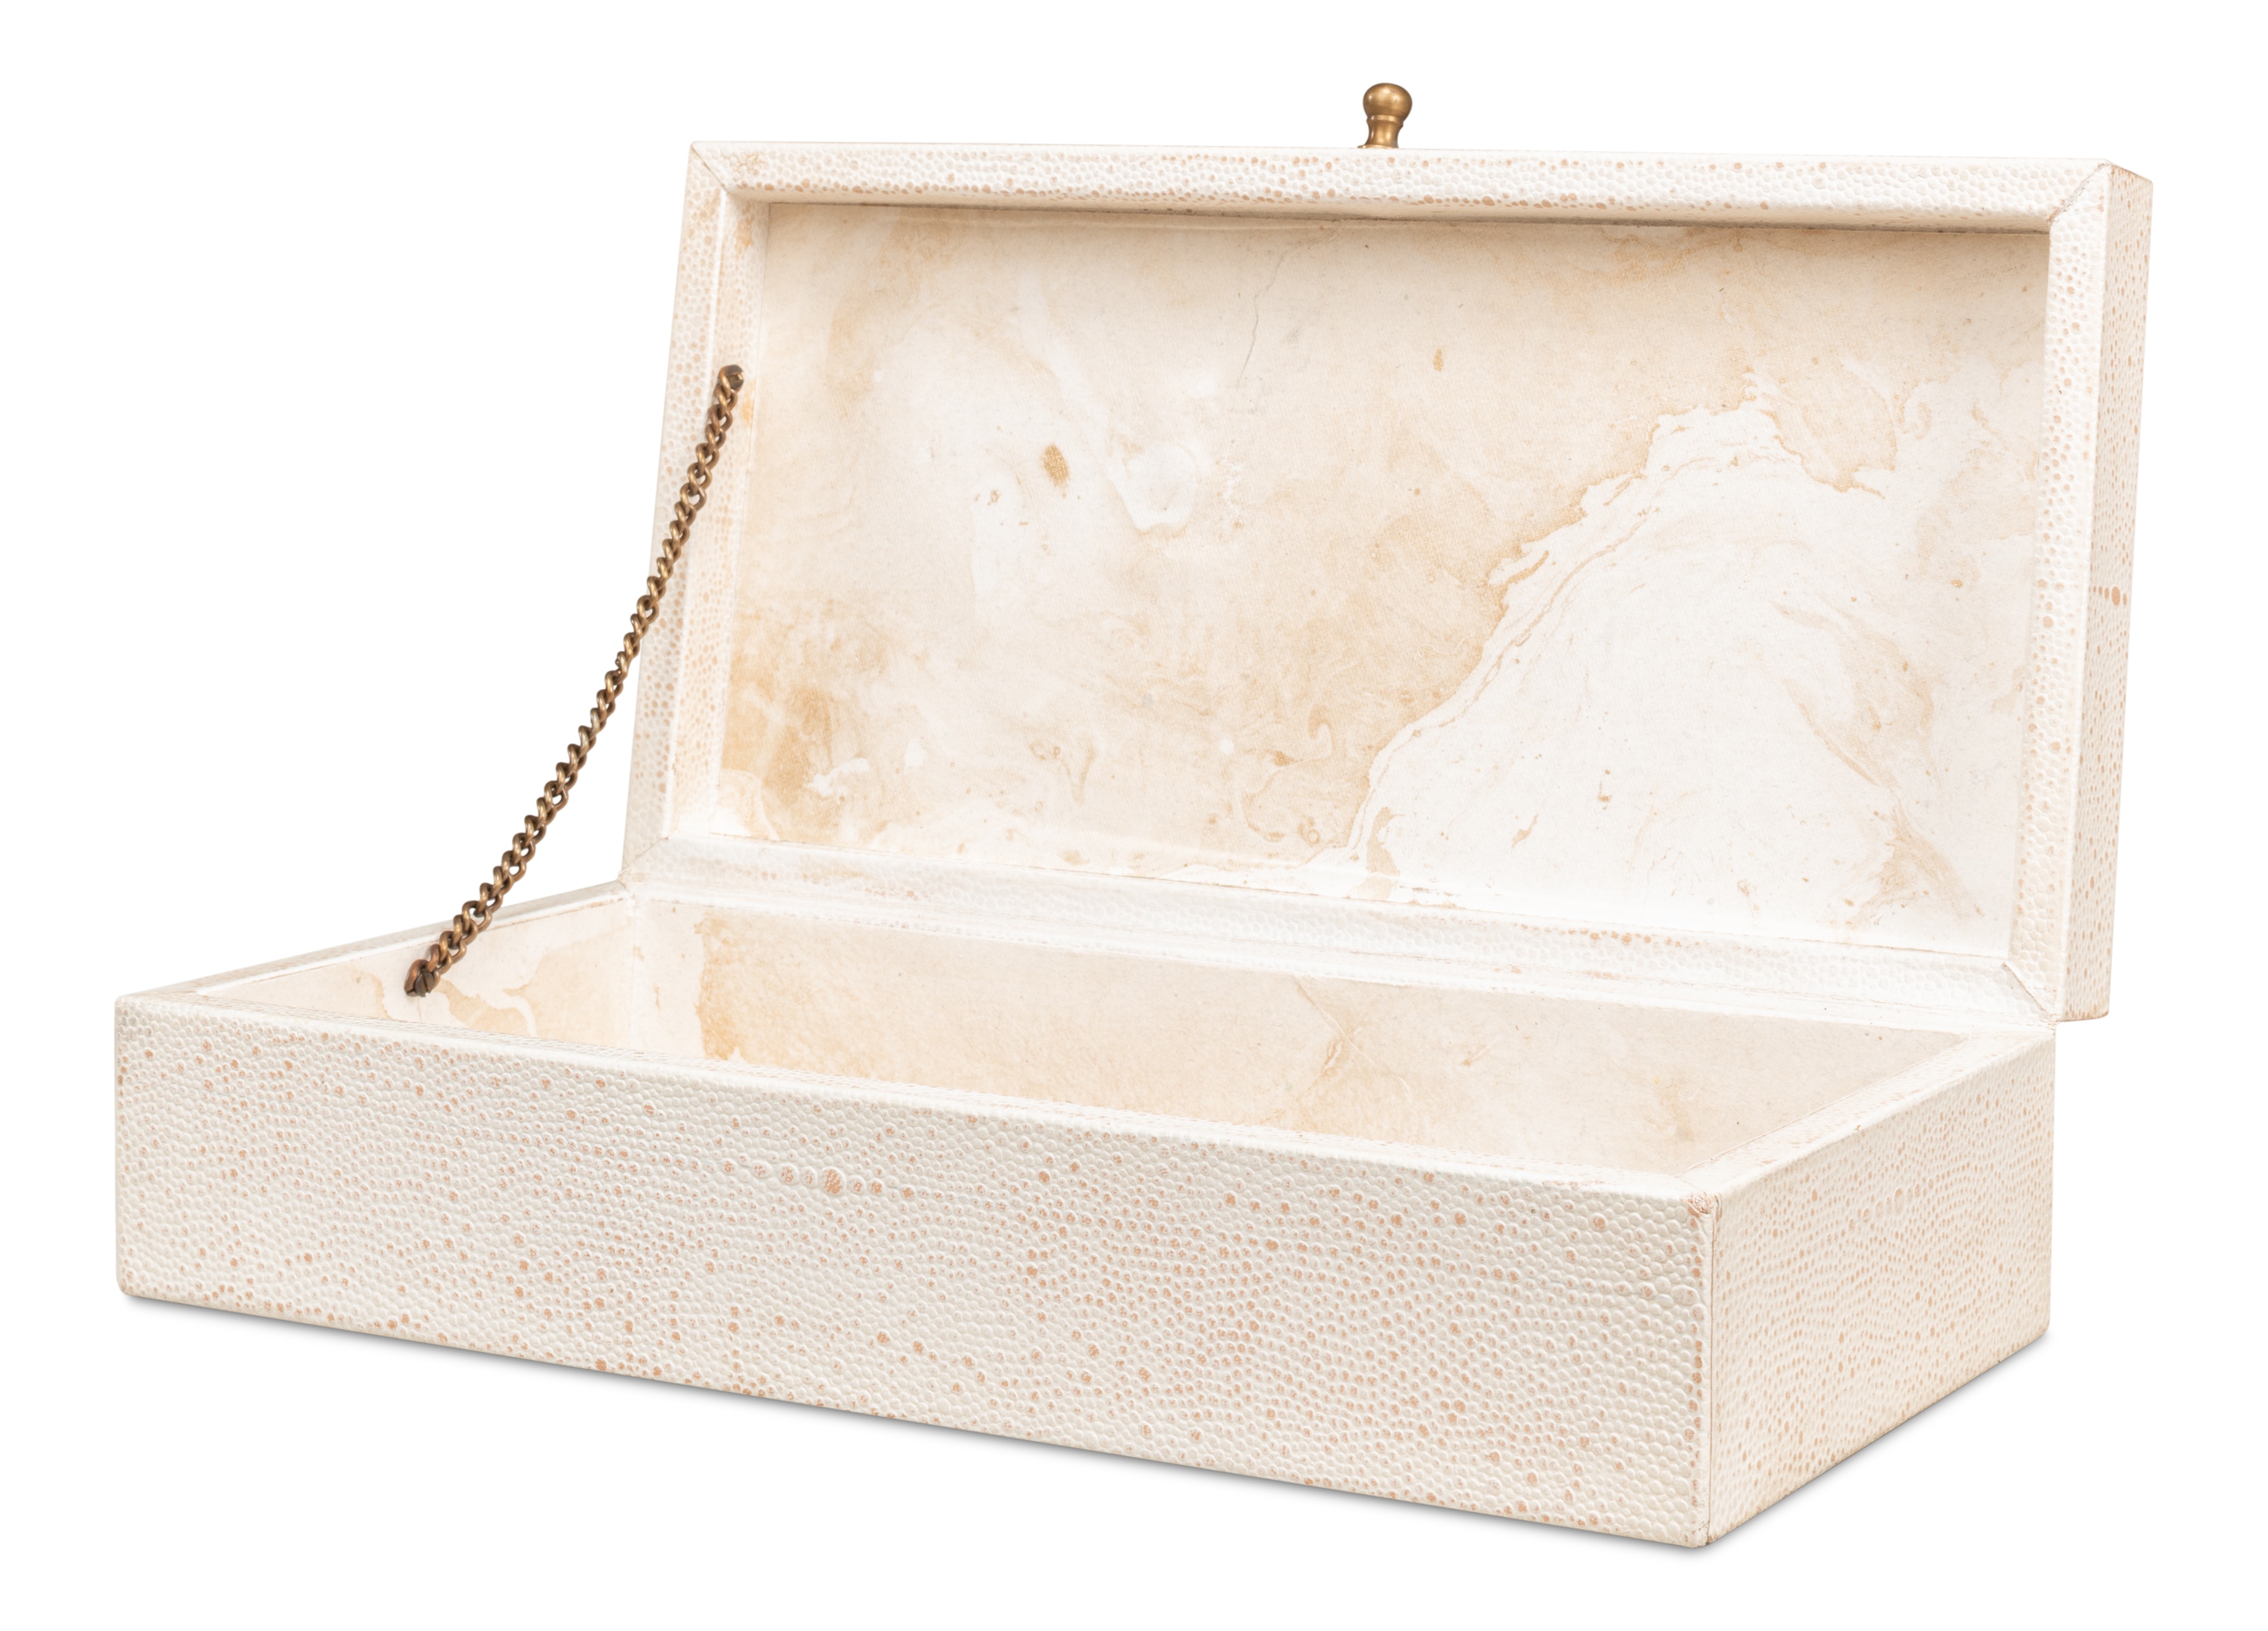 Gatsburg Shagreen Box Osprey White